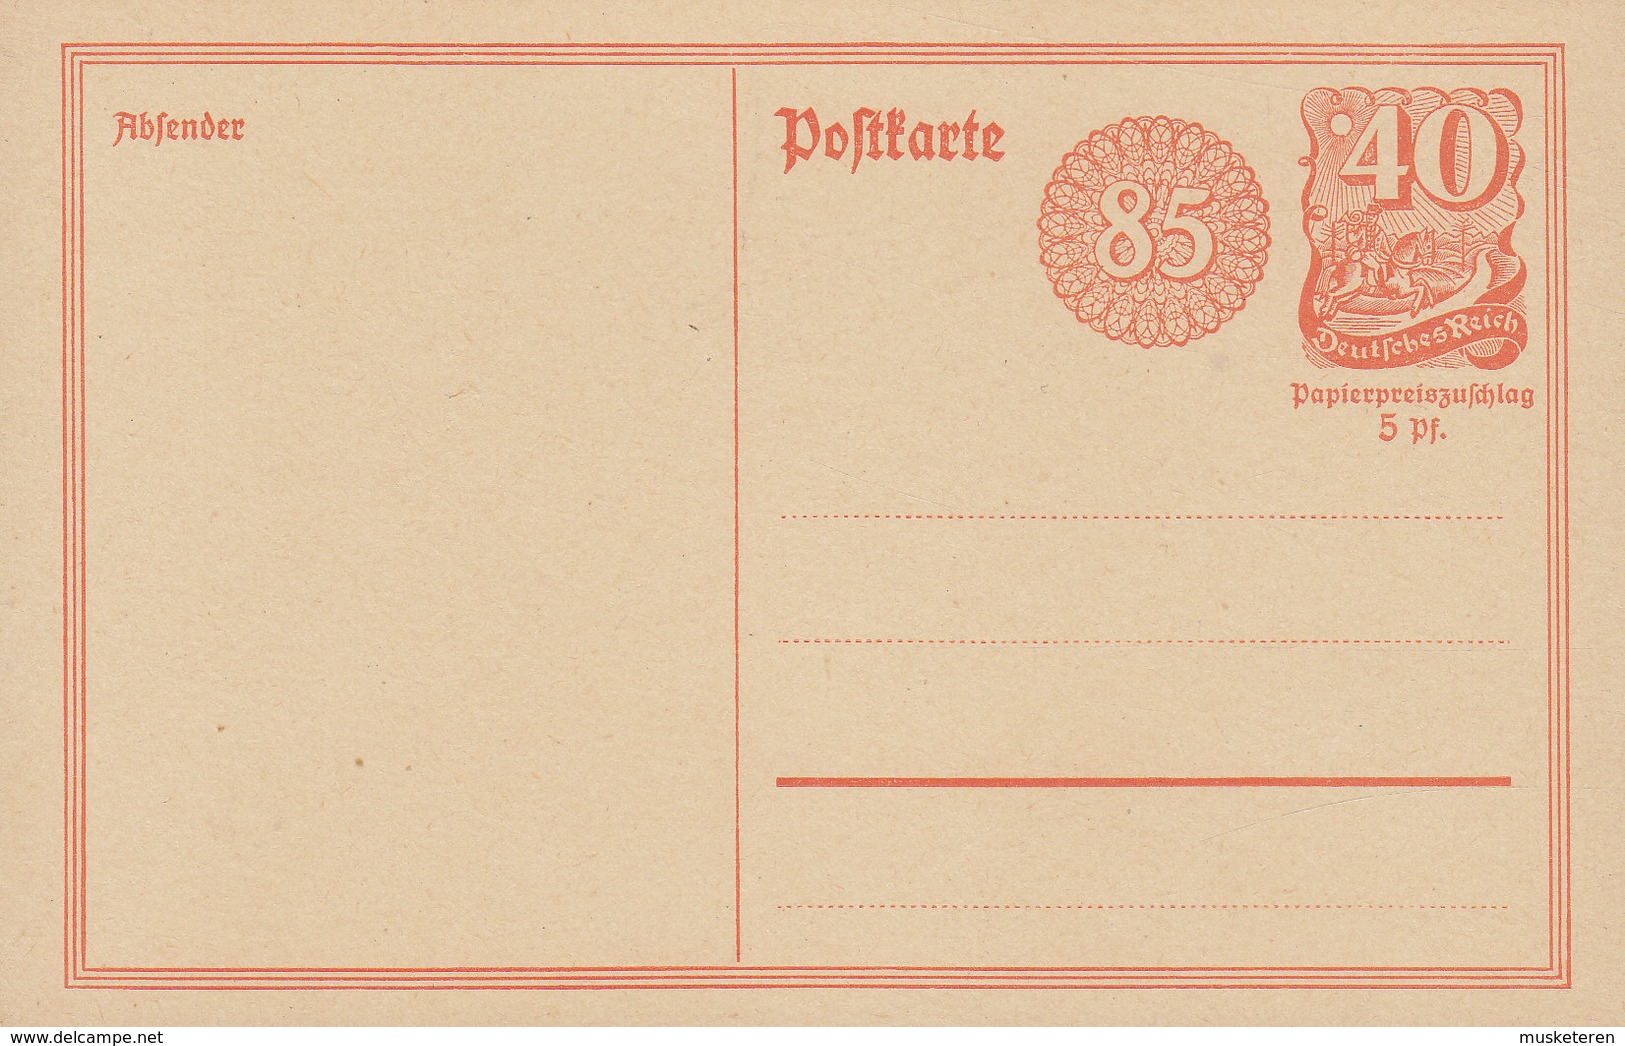 Deutsches Reich Postal Stationery Ganzsache Entier 85 Pf. Neben 40 Pf. Postreiter M. Rosettendruck (Unused) - Briefkaarten